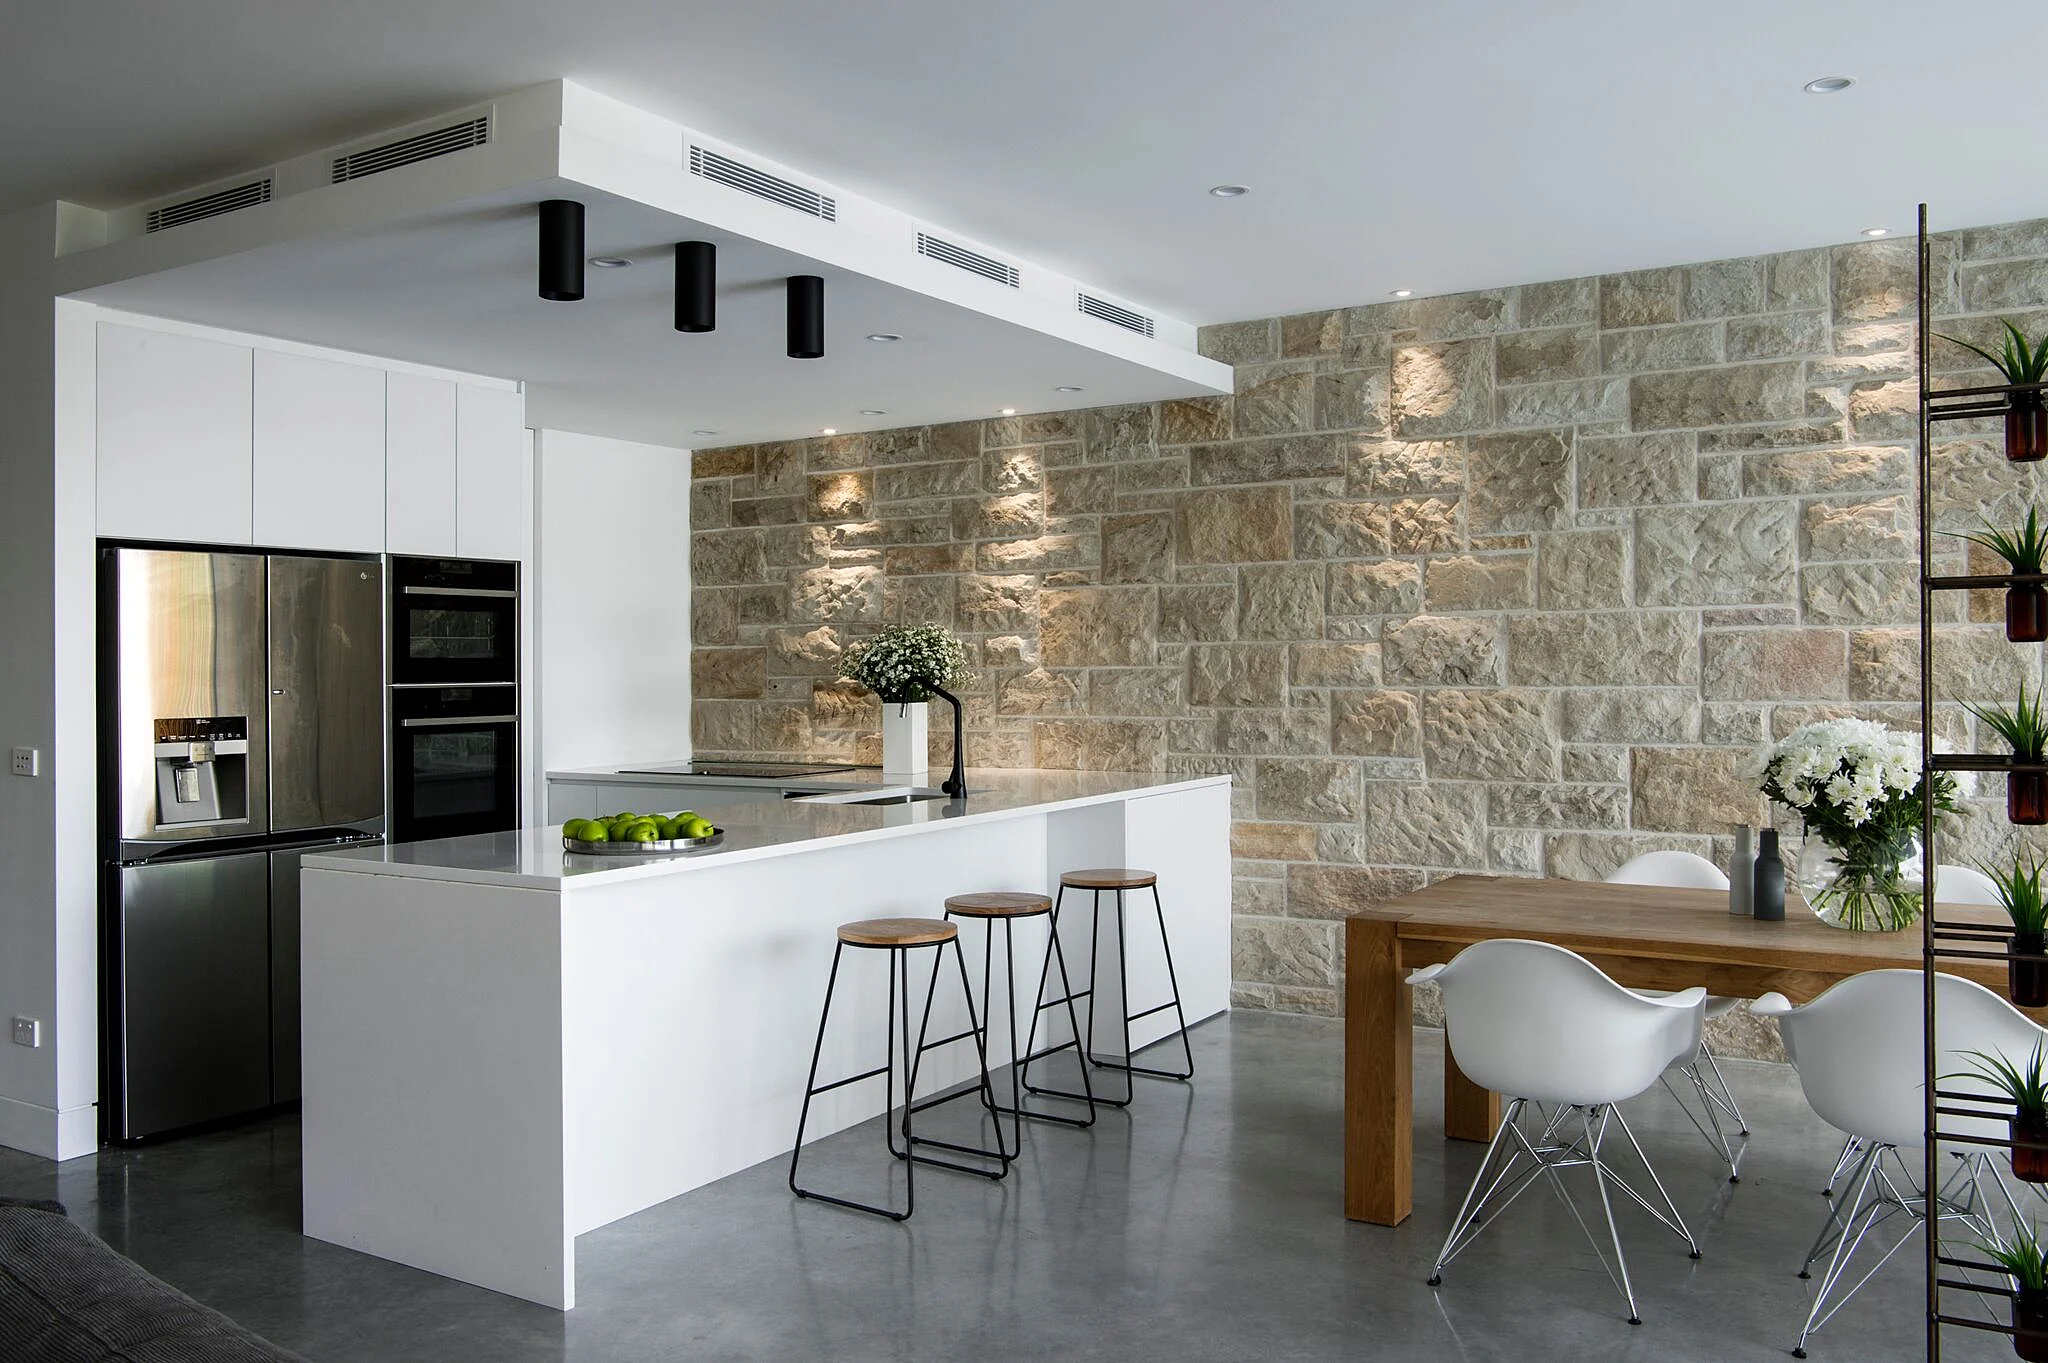 Kitchen with Modern Design